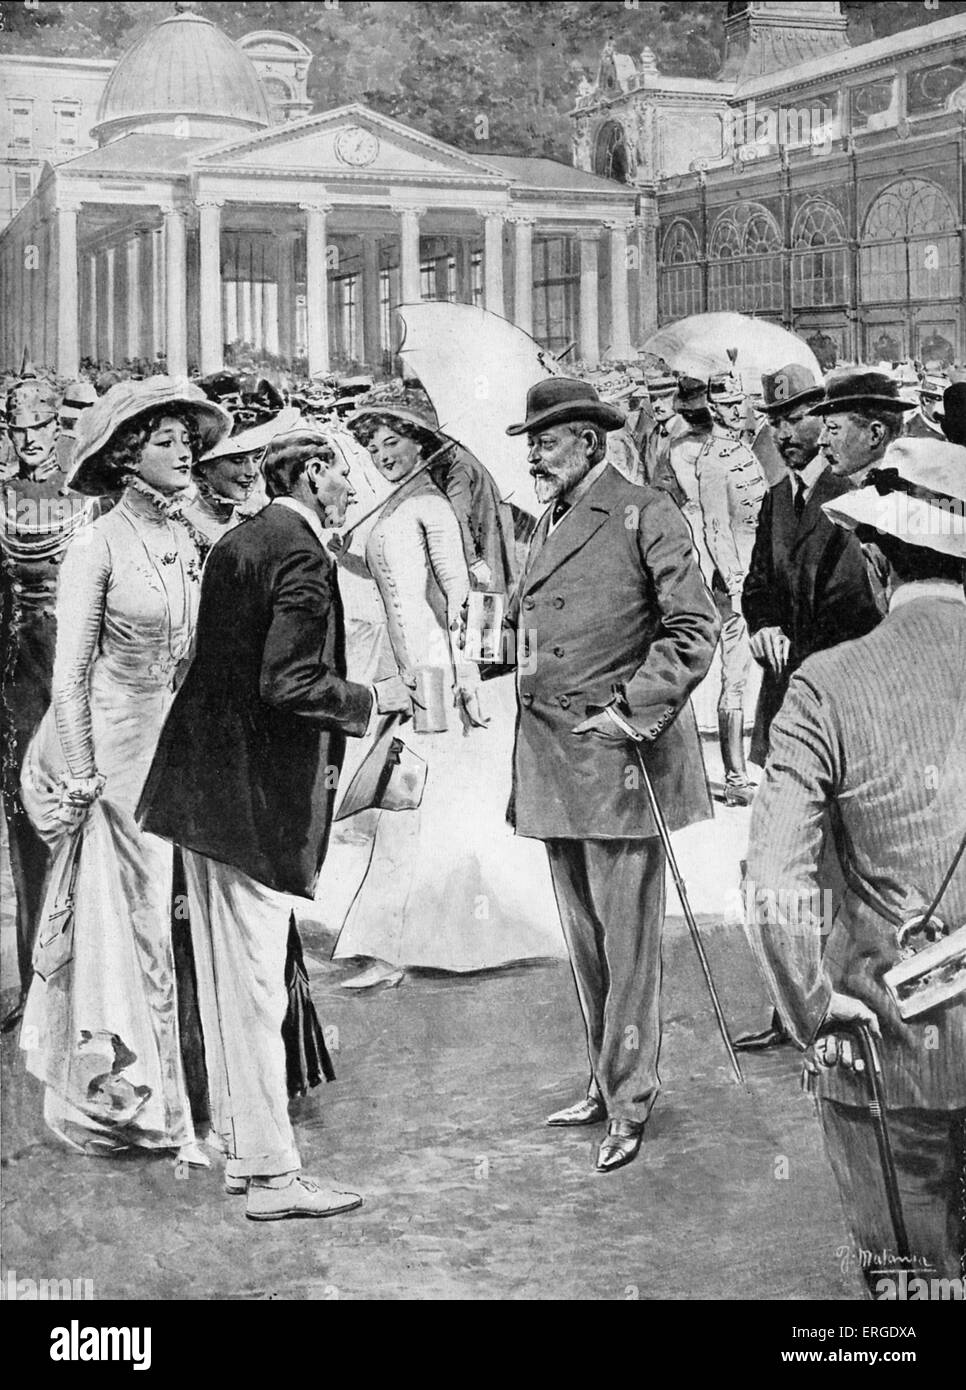 Édouard VII au springs à Marienbad, 1909 - prendre la 'cure' (les eaux de source). À partir de Dessin de F. Matania de la période. Banque D'Images